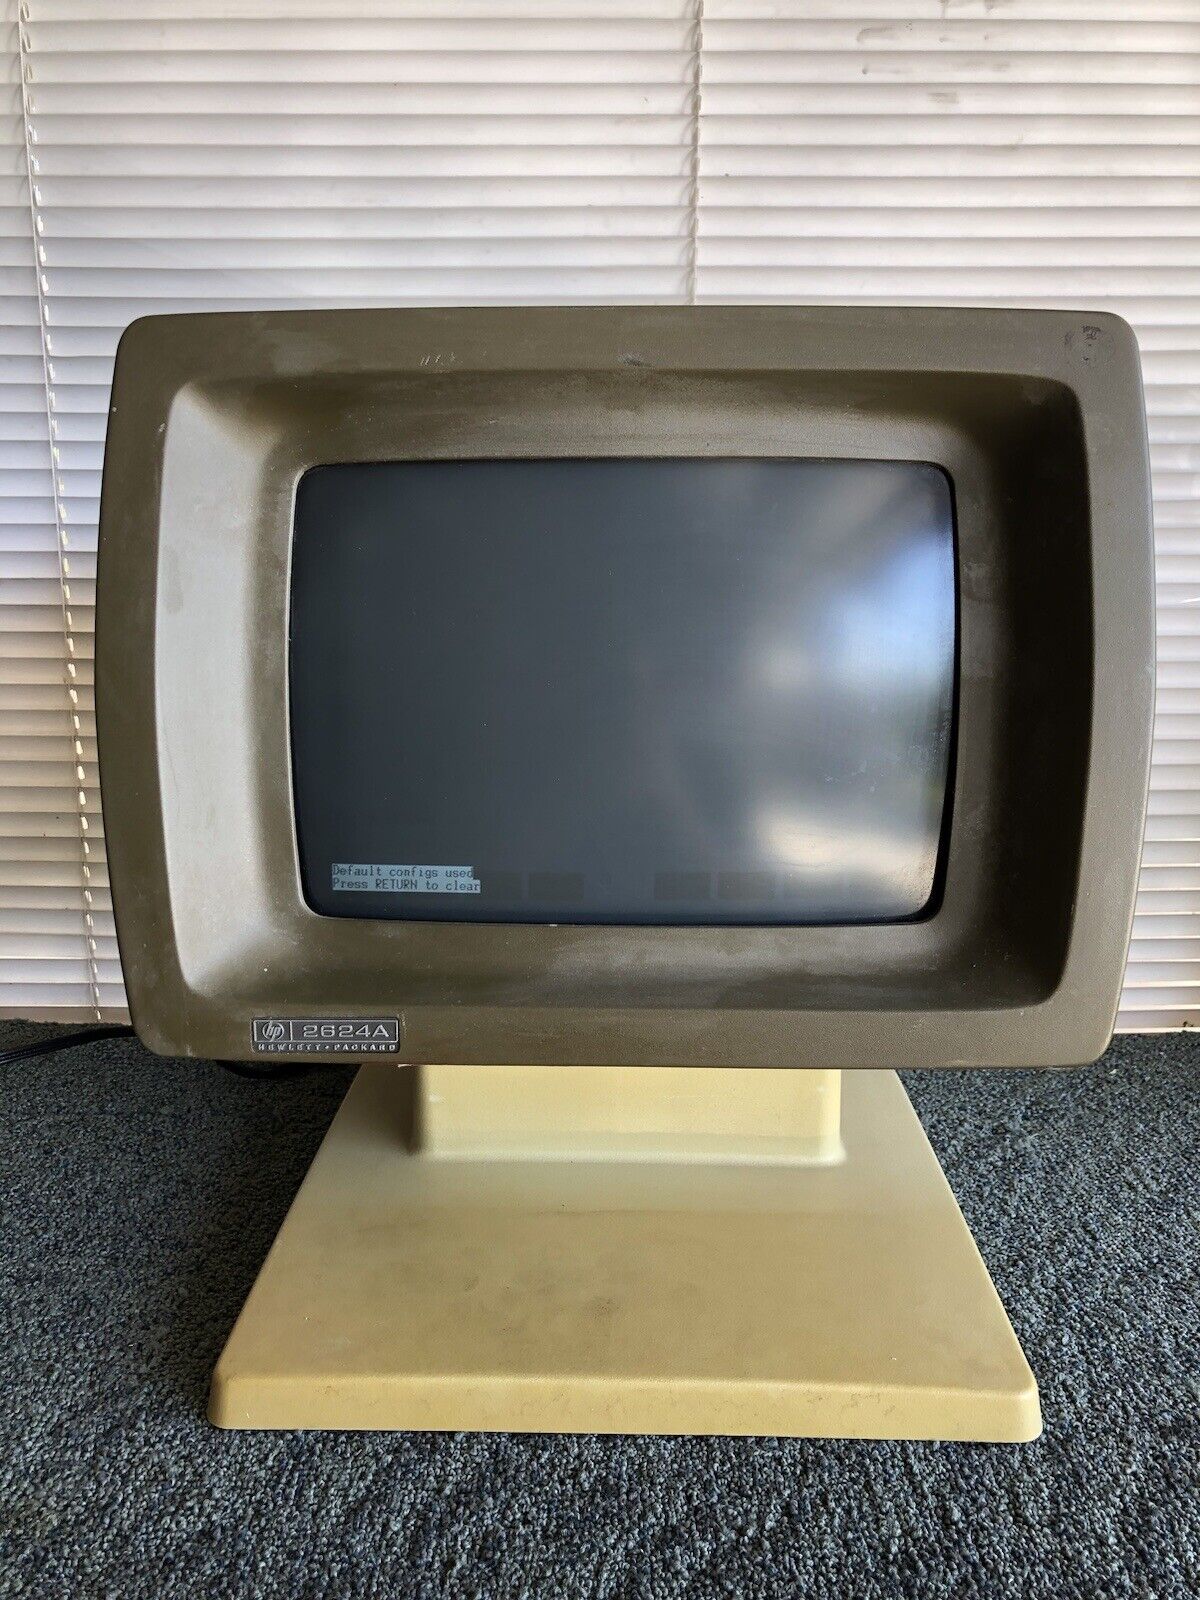 Vintage Hewlett Packard HP 2624A Terminal Computer - 